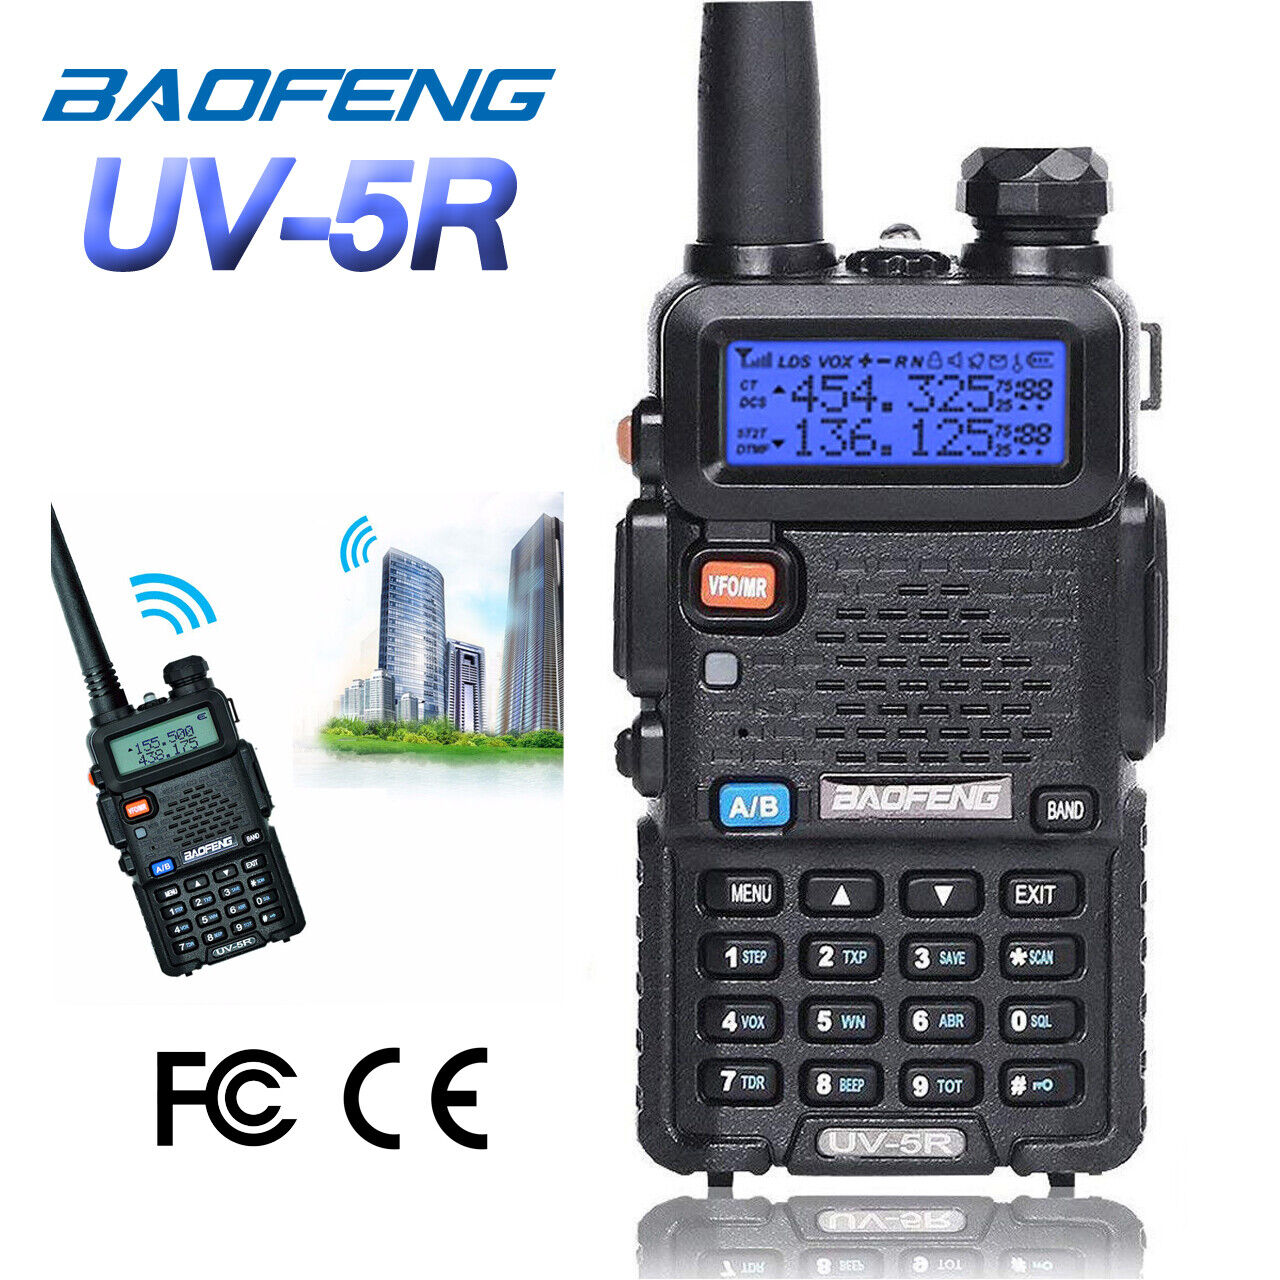 Baofeng UV-5R VHF UHF Dual-Band FM Ham 5W Portable Two-way Radio Walkie Talkie